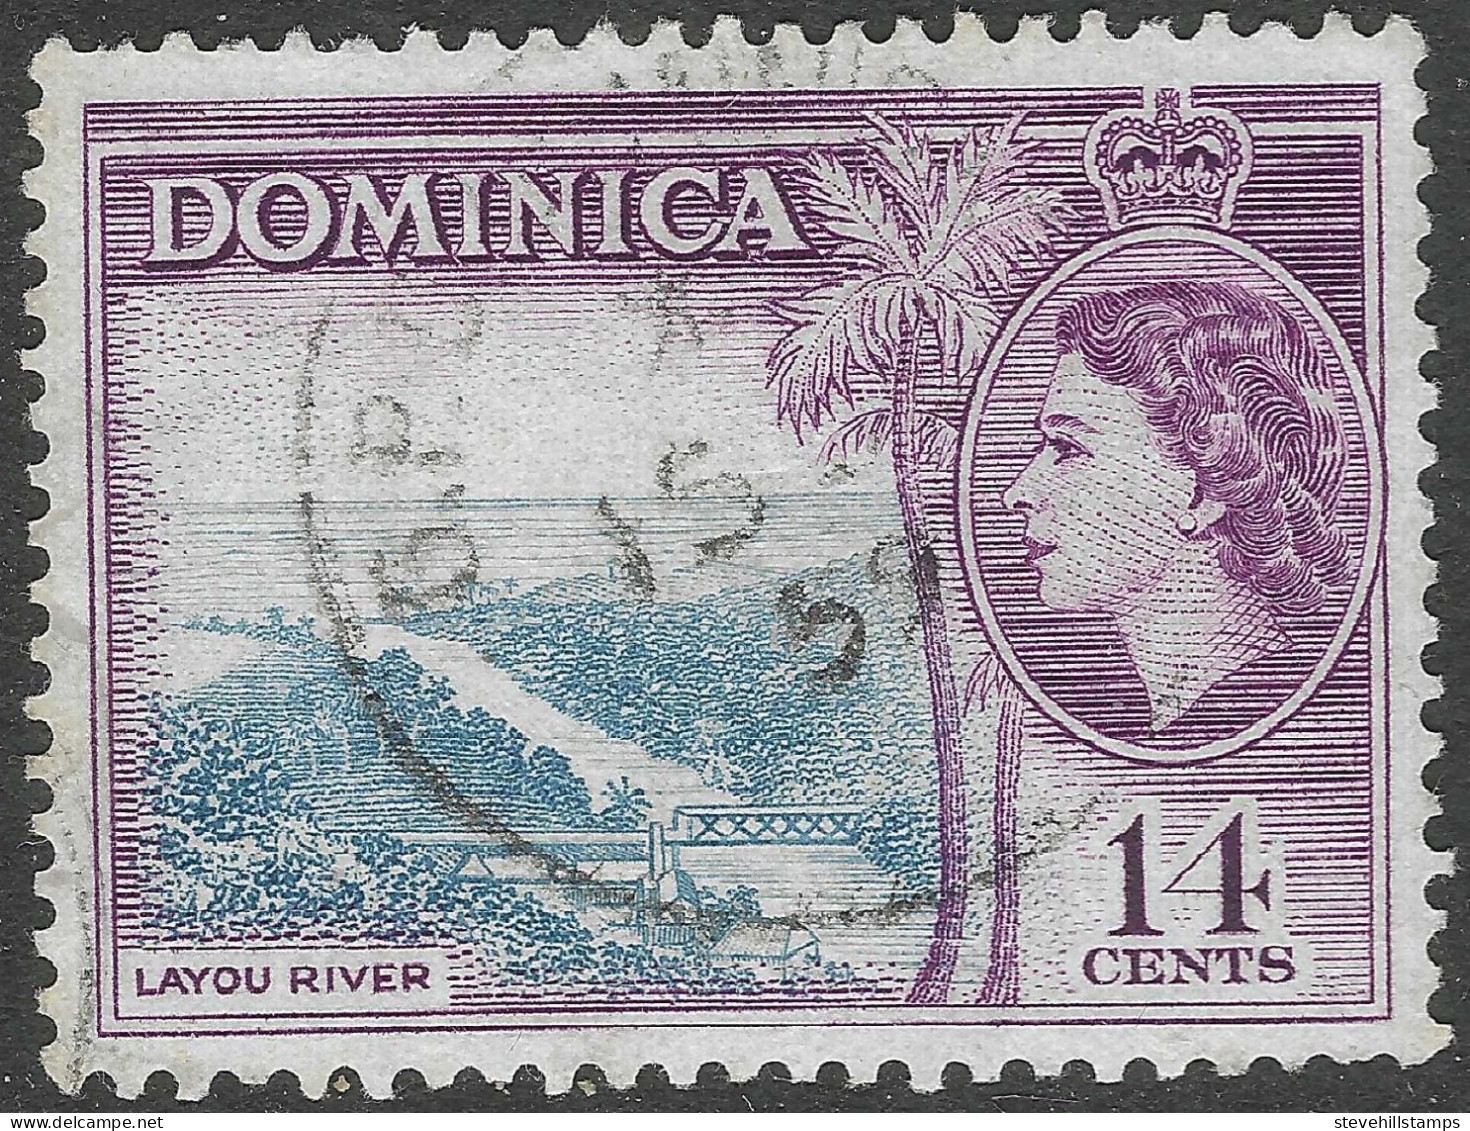 Dominica. 1954-62 QEII. 14c Used. SG 152 - Dominica (...-1978)